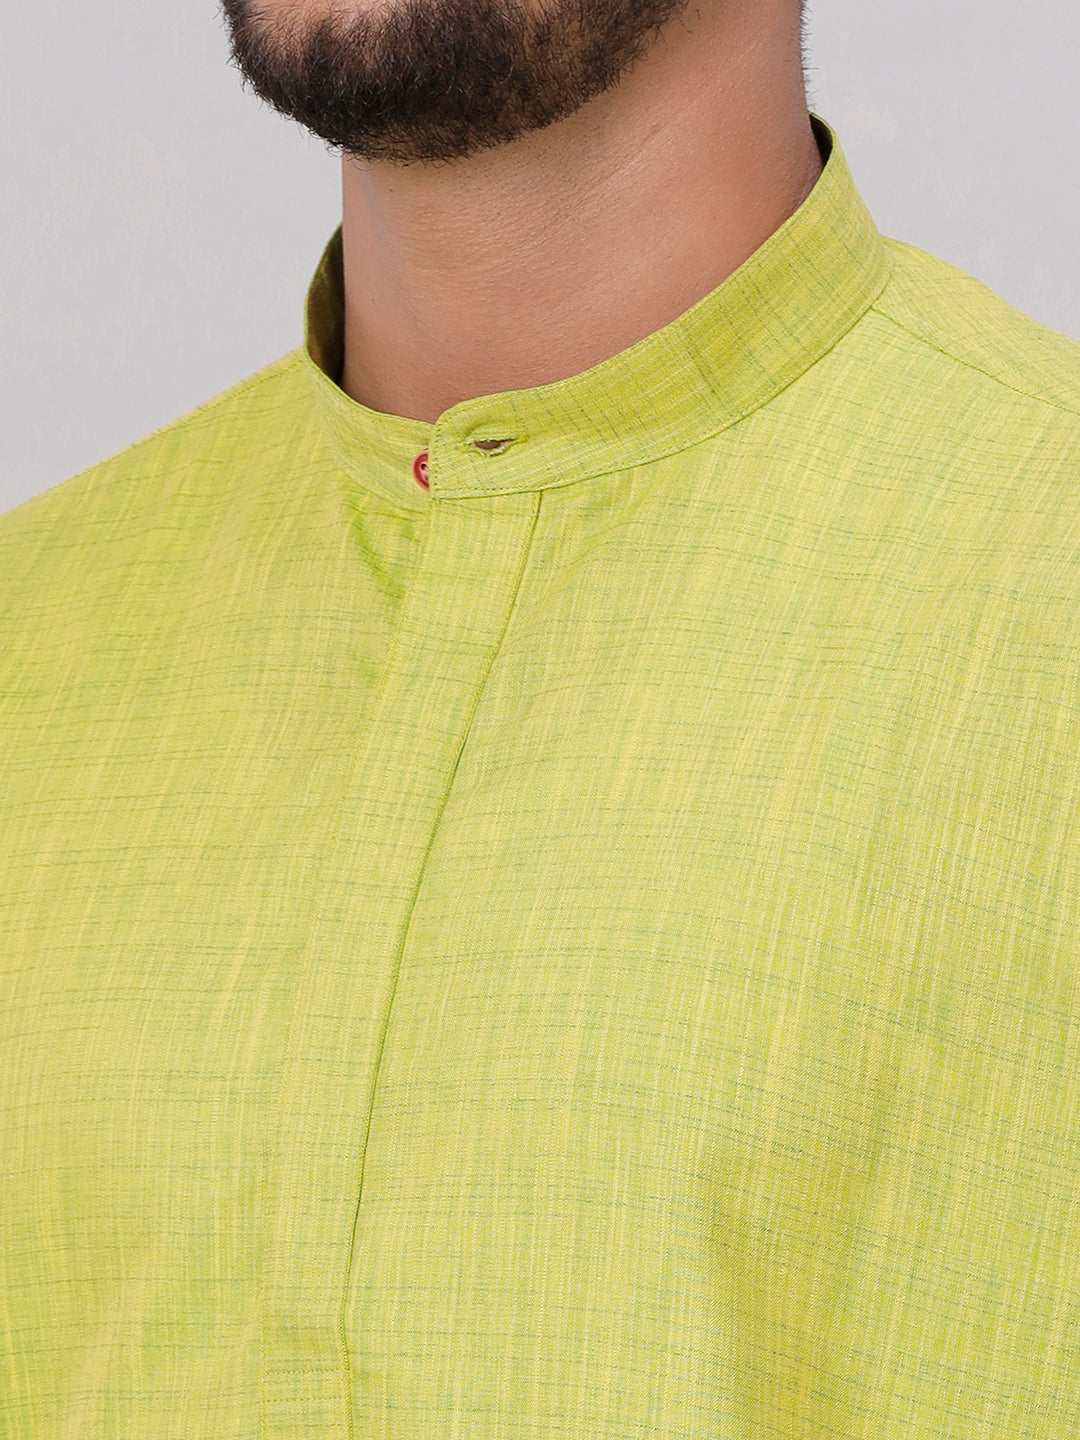 Mens Cotton Full Sleeves Parrot Green Medium Length Pocket Kurta FS2-Zoom view